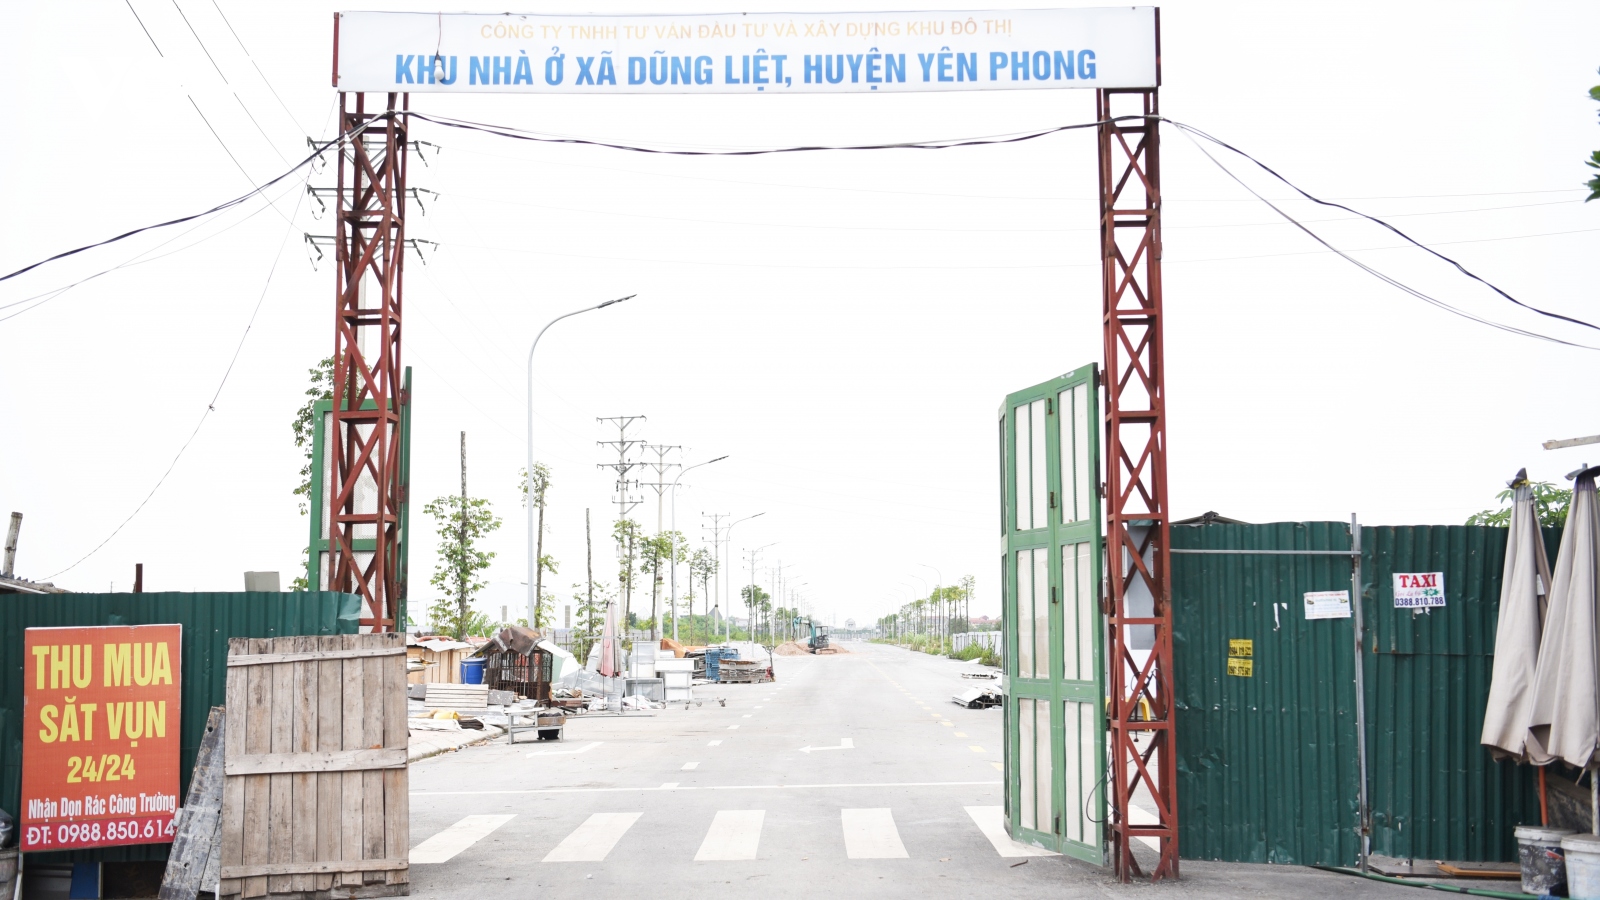 Huyện Yên Phong yêu cầu CĐT trả lời về dự án Nhà ở Dũng Liệt sau phản ánh của VOV